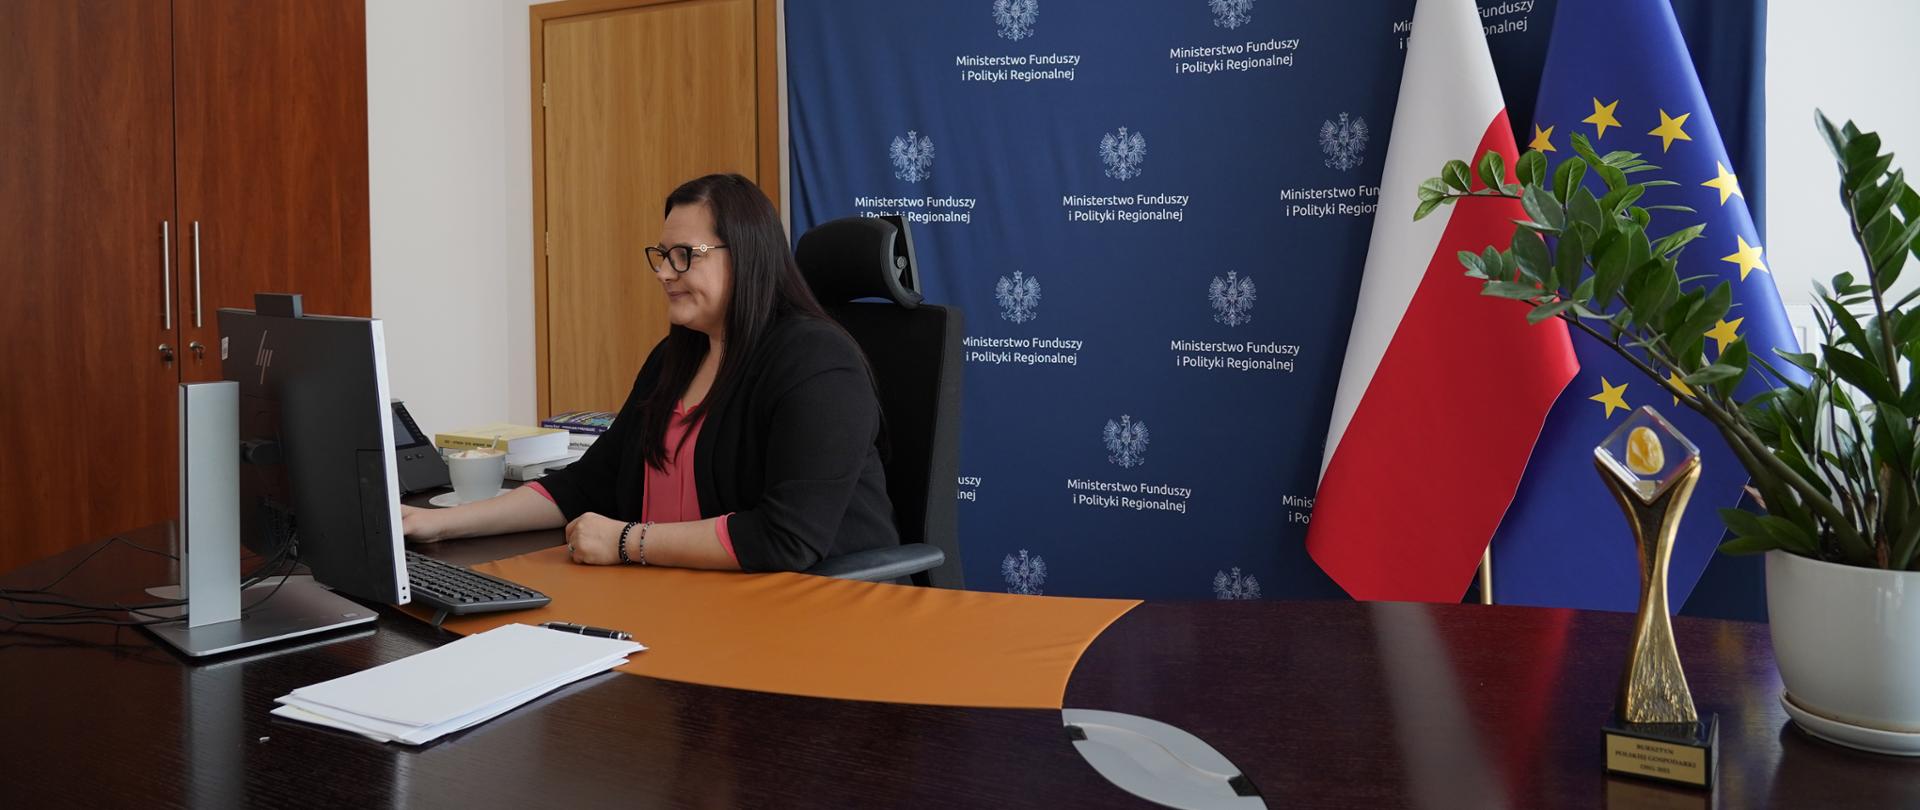 Wiceminister Małgorzata Jarosińska-Jedynak siedzi w gabinecie przy biurku z monitorem. Za nią ścianka MFiPR i flagi PL i UE. Obok kwiaty w doniczce.